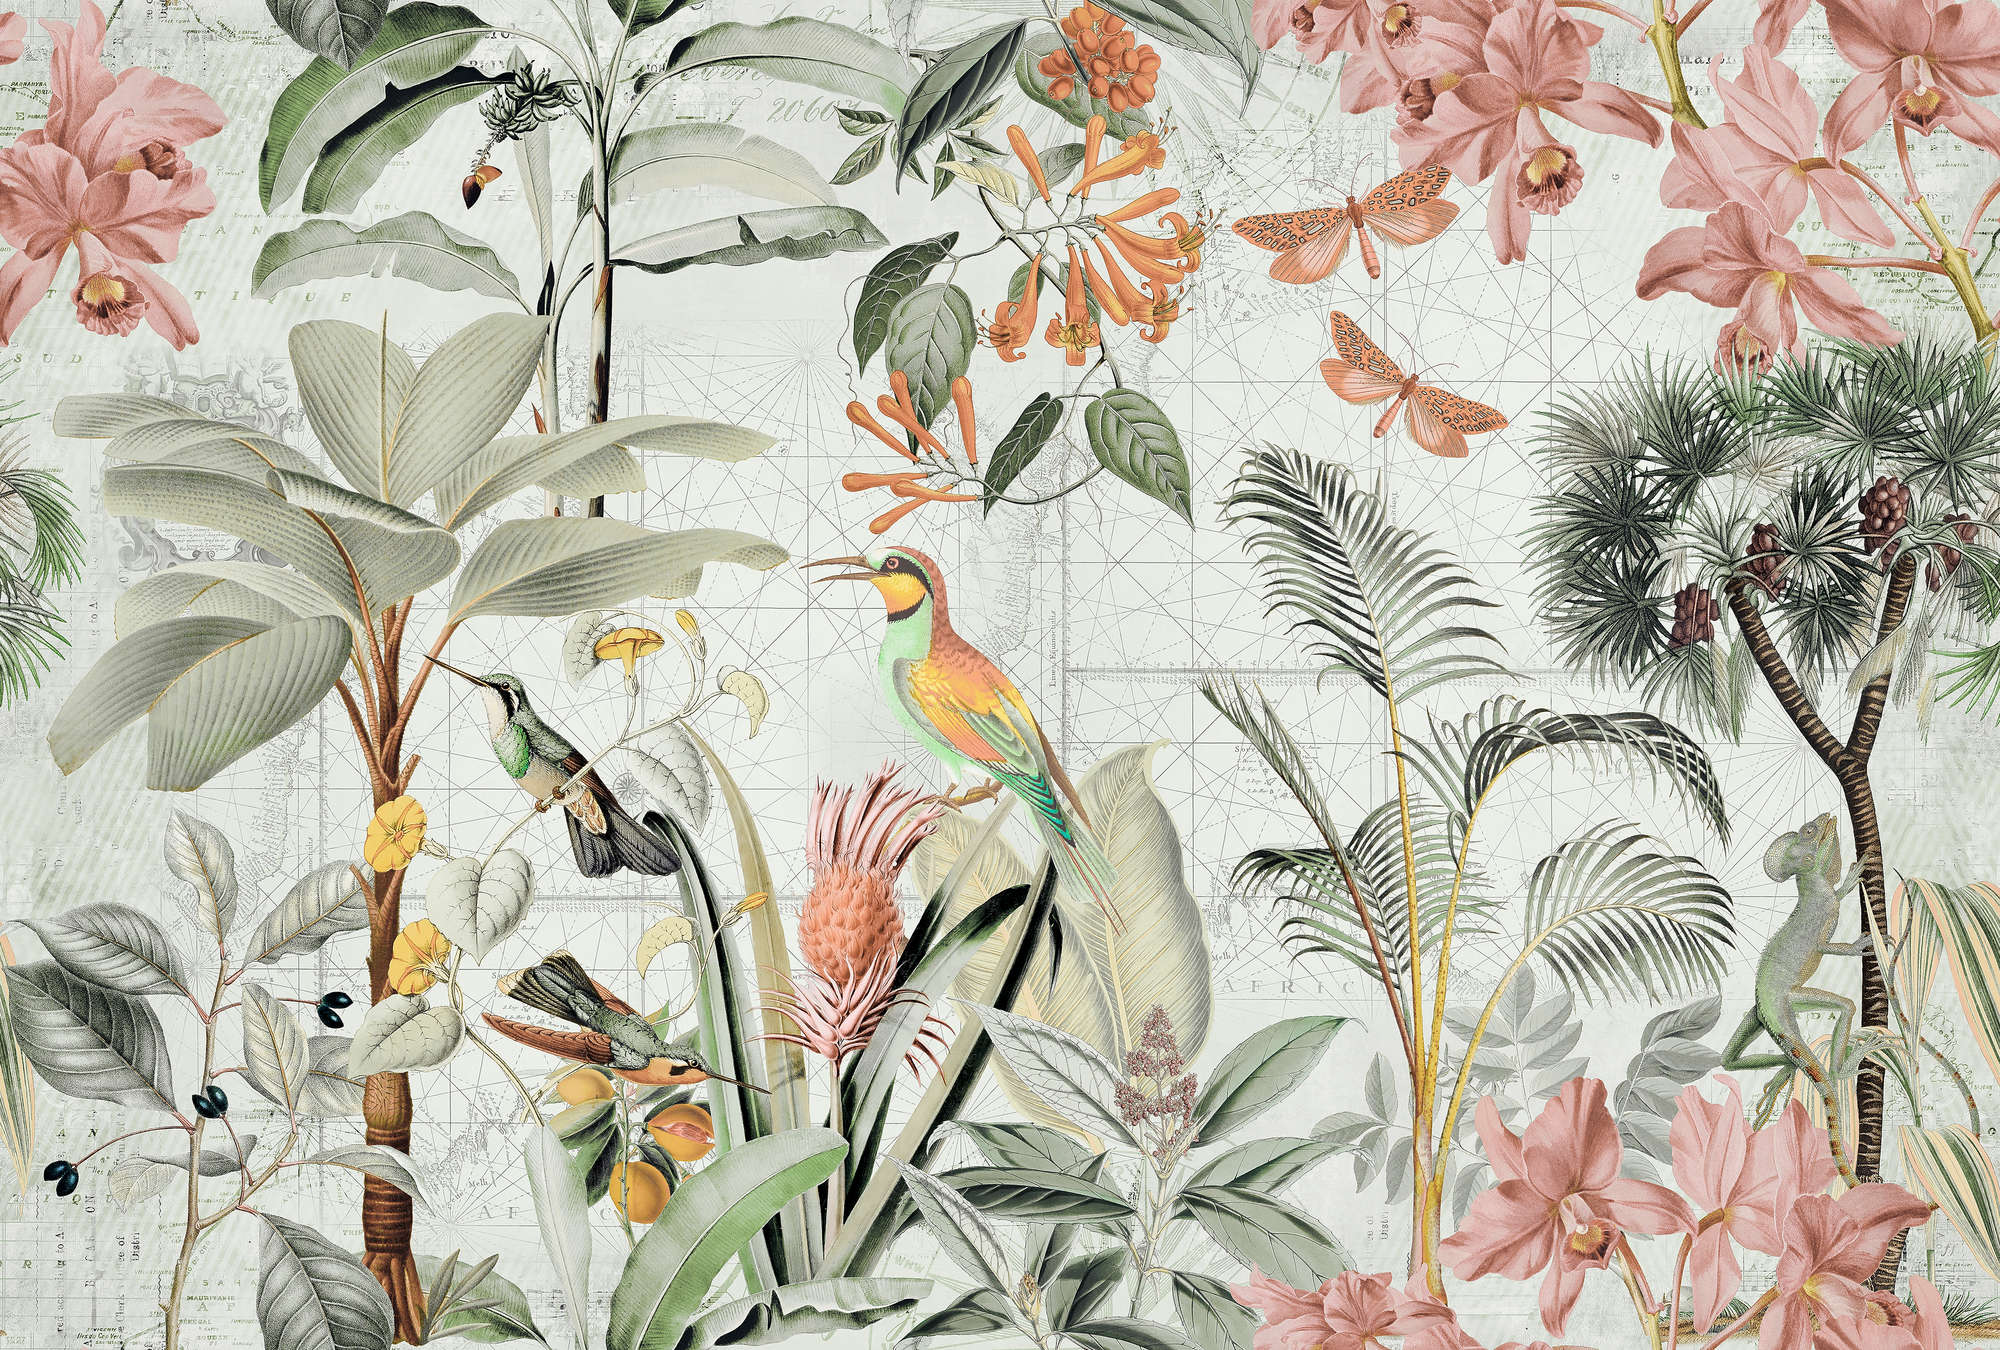             Papier peint jungle collage avec fleurs tropicales & oiseaux
        